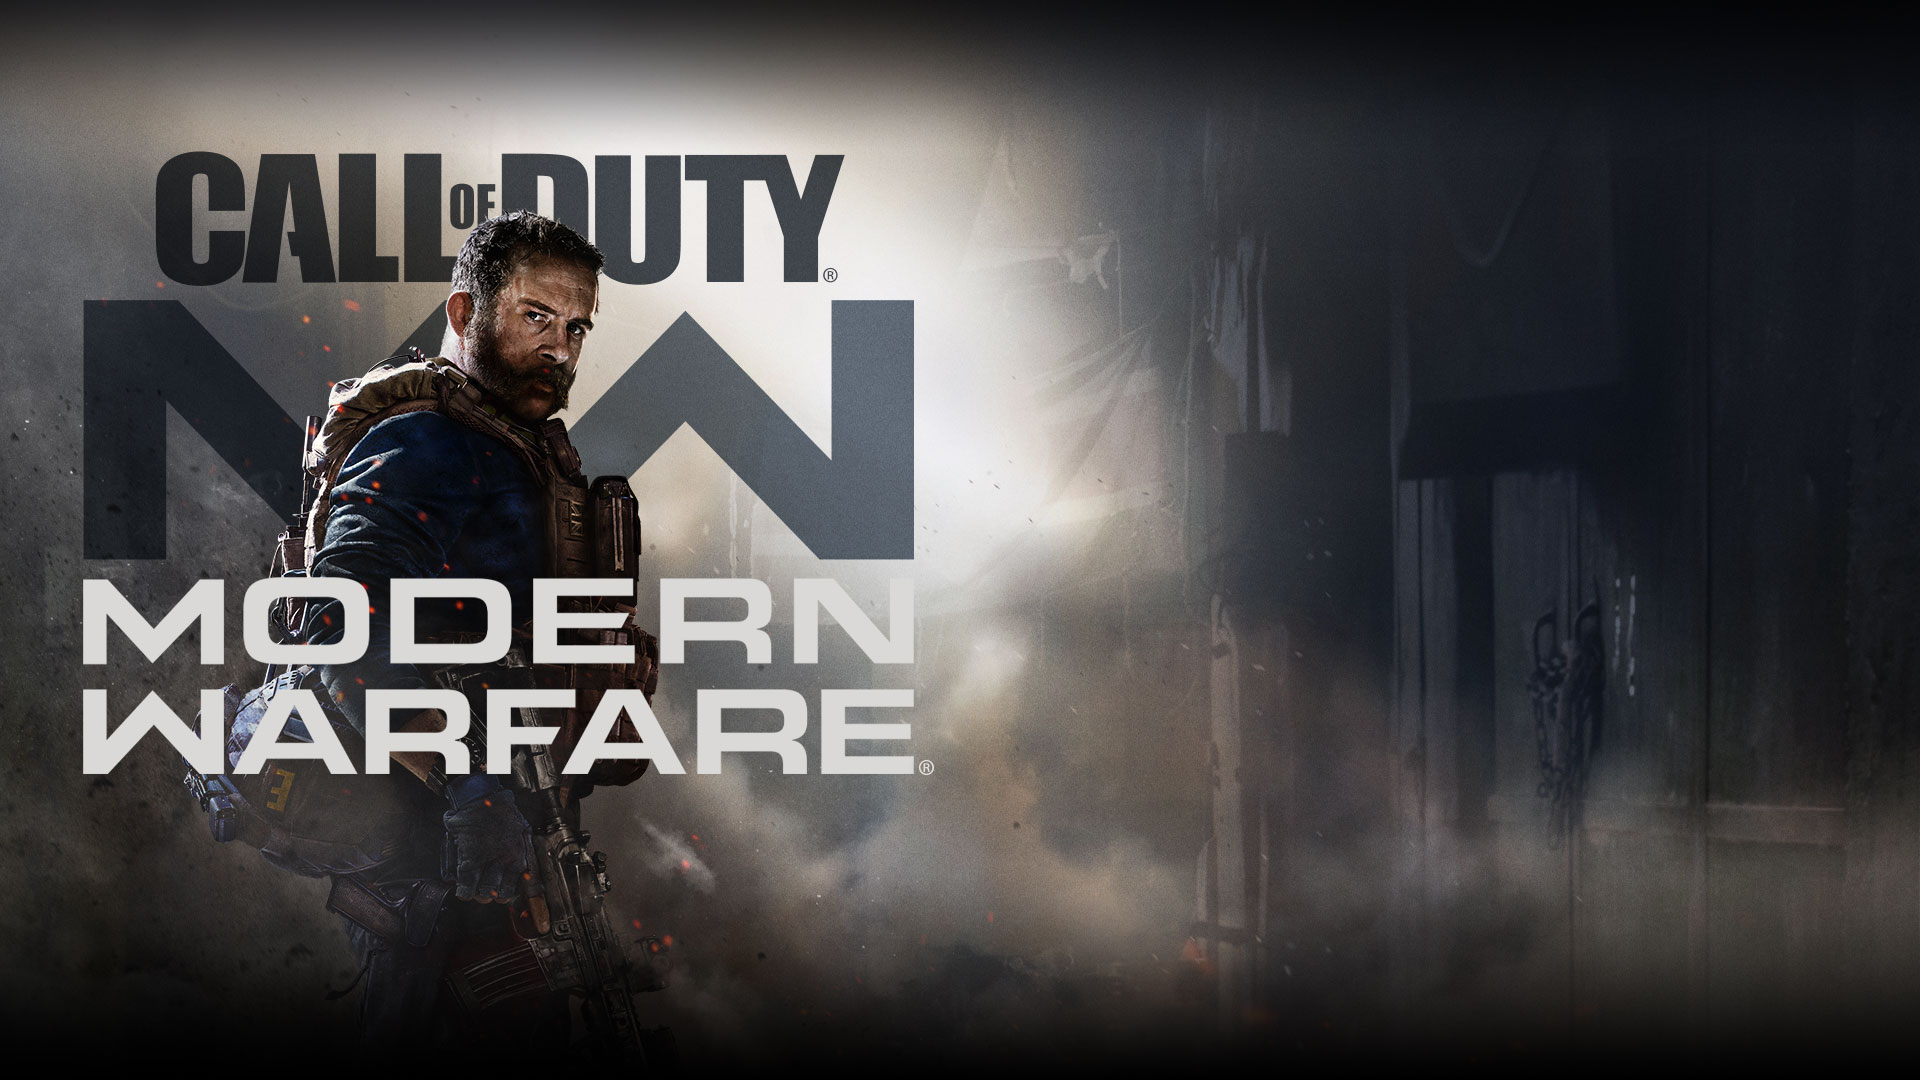 Call of Duty: Логотип Modern Warfare с персонажем Капитан Прайс в военном жилете на синем фоне